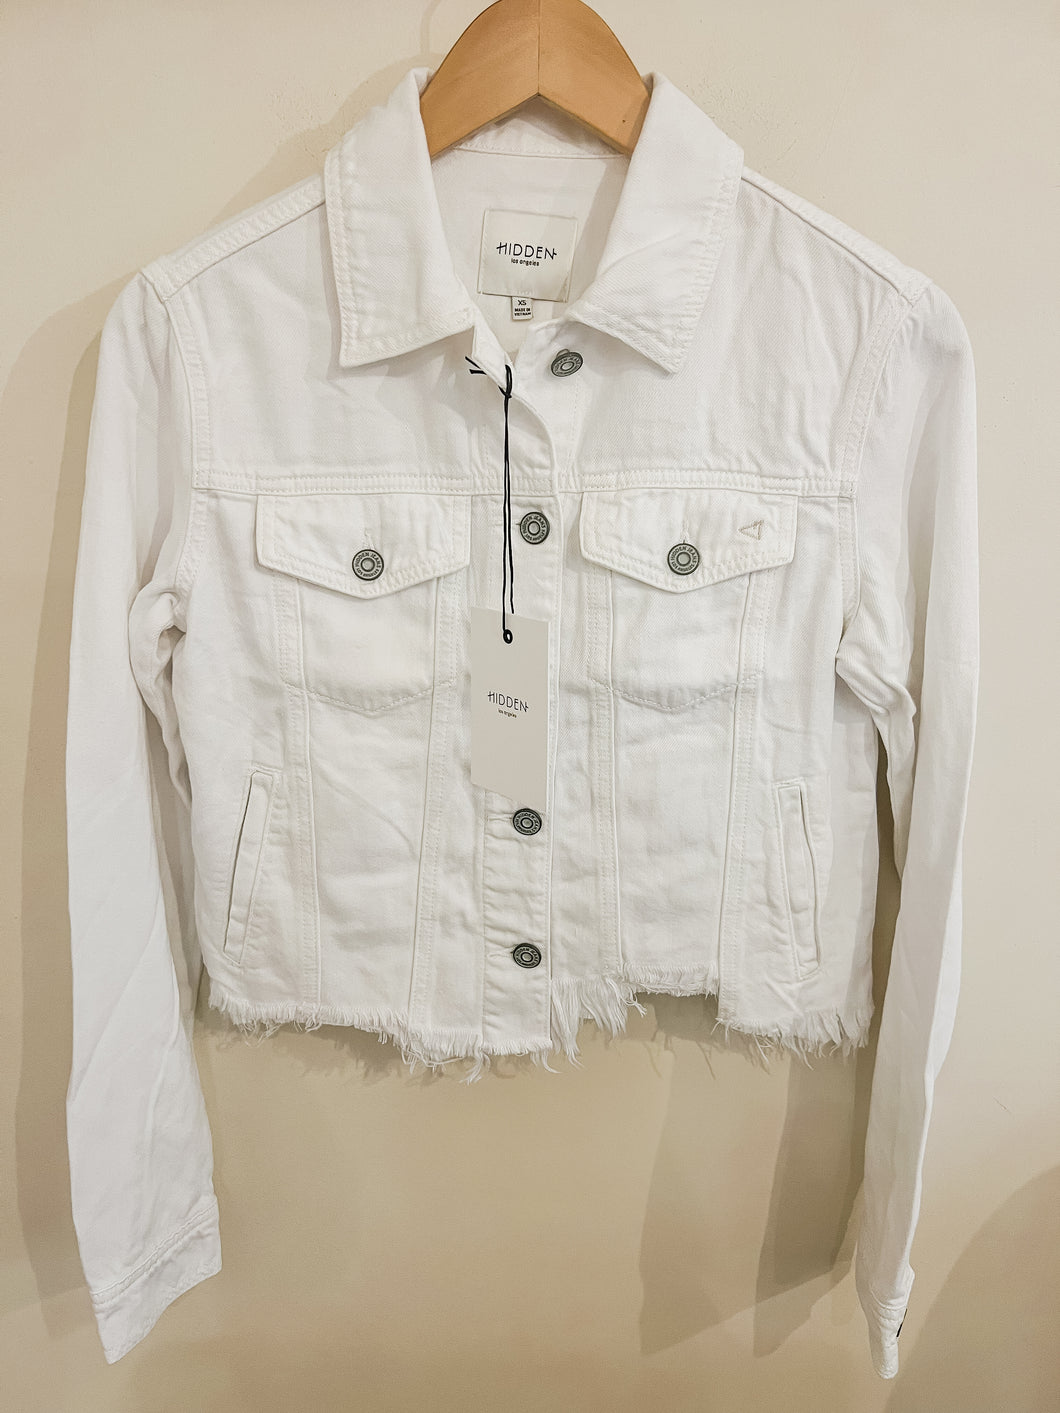 Hidden Denim- White Frayed Jacket